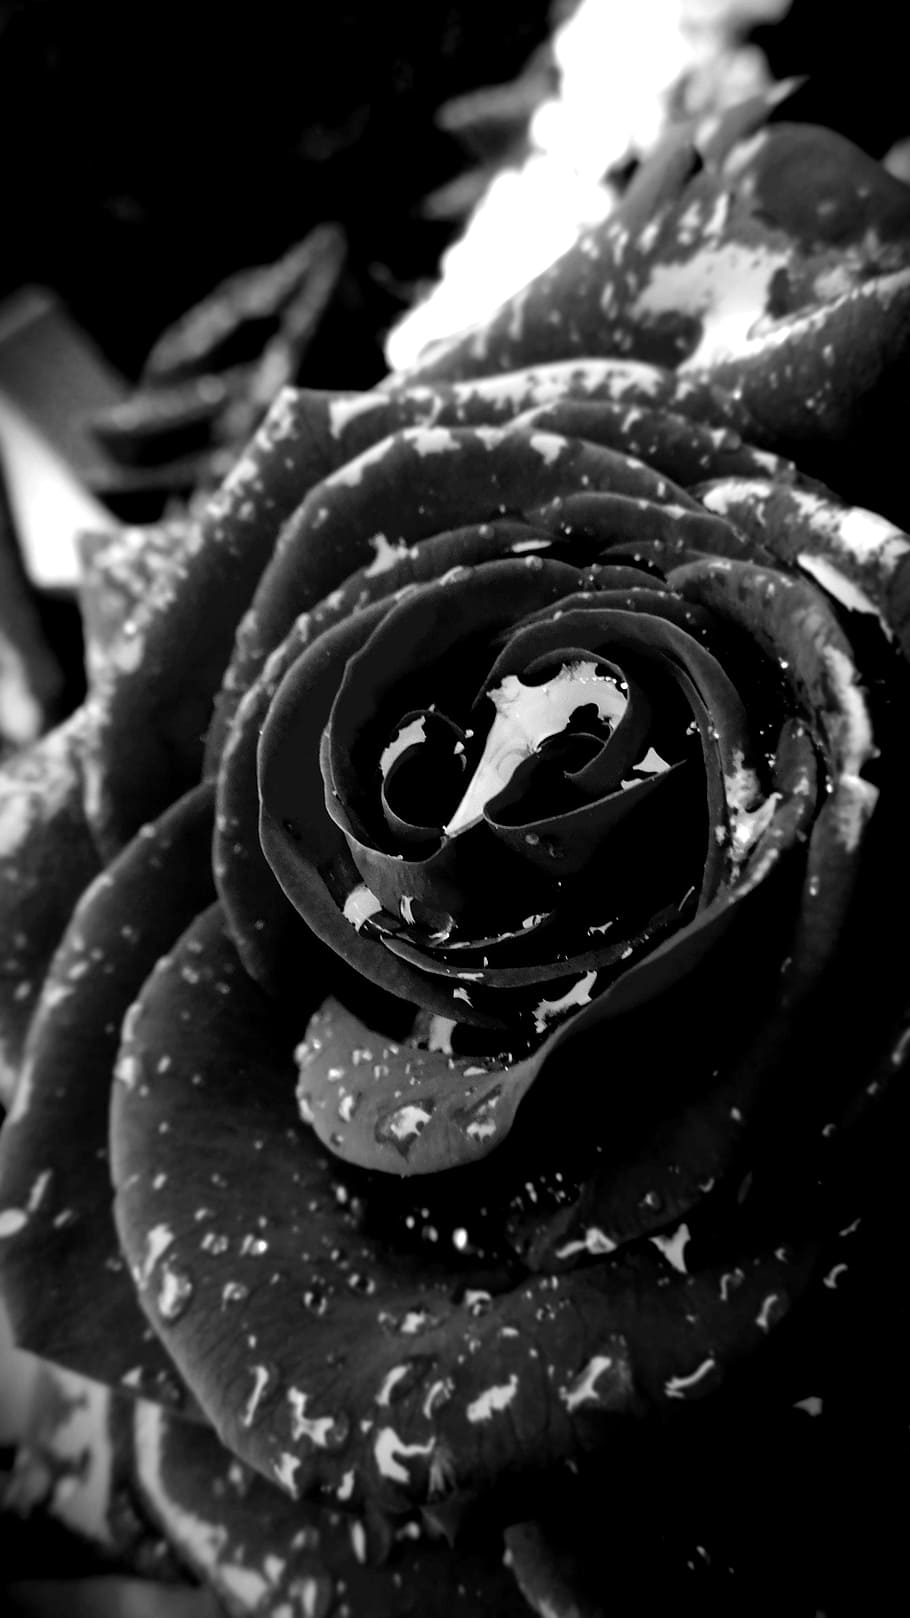 Черная роза фото на аву